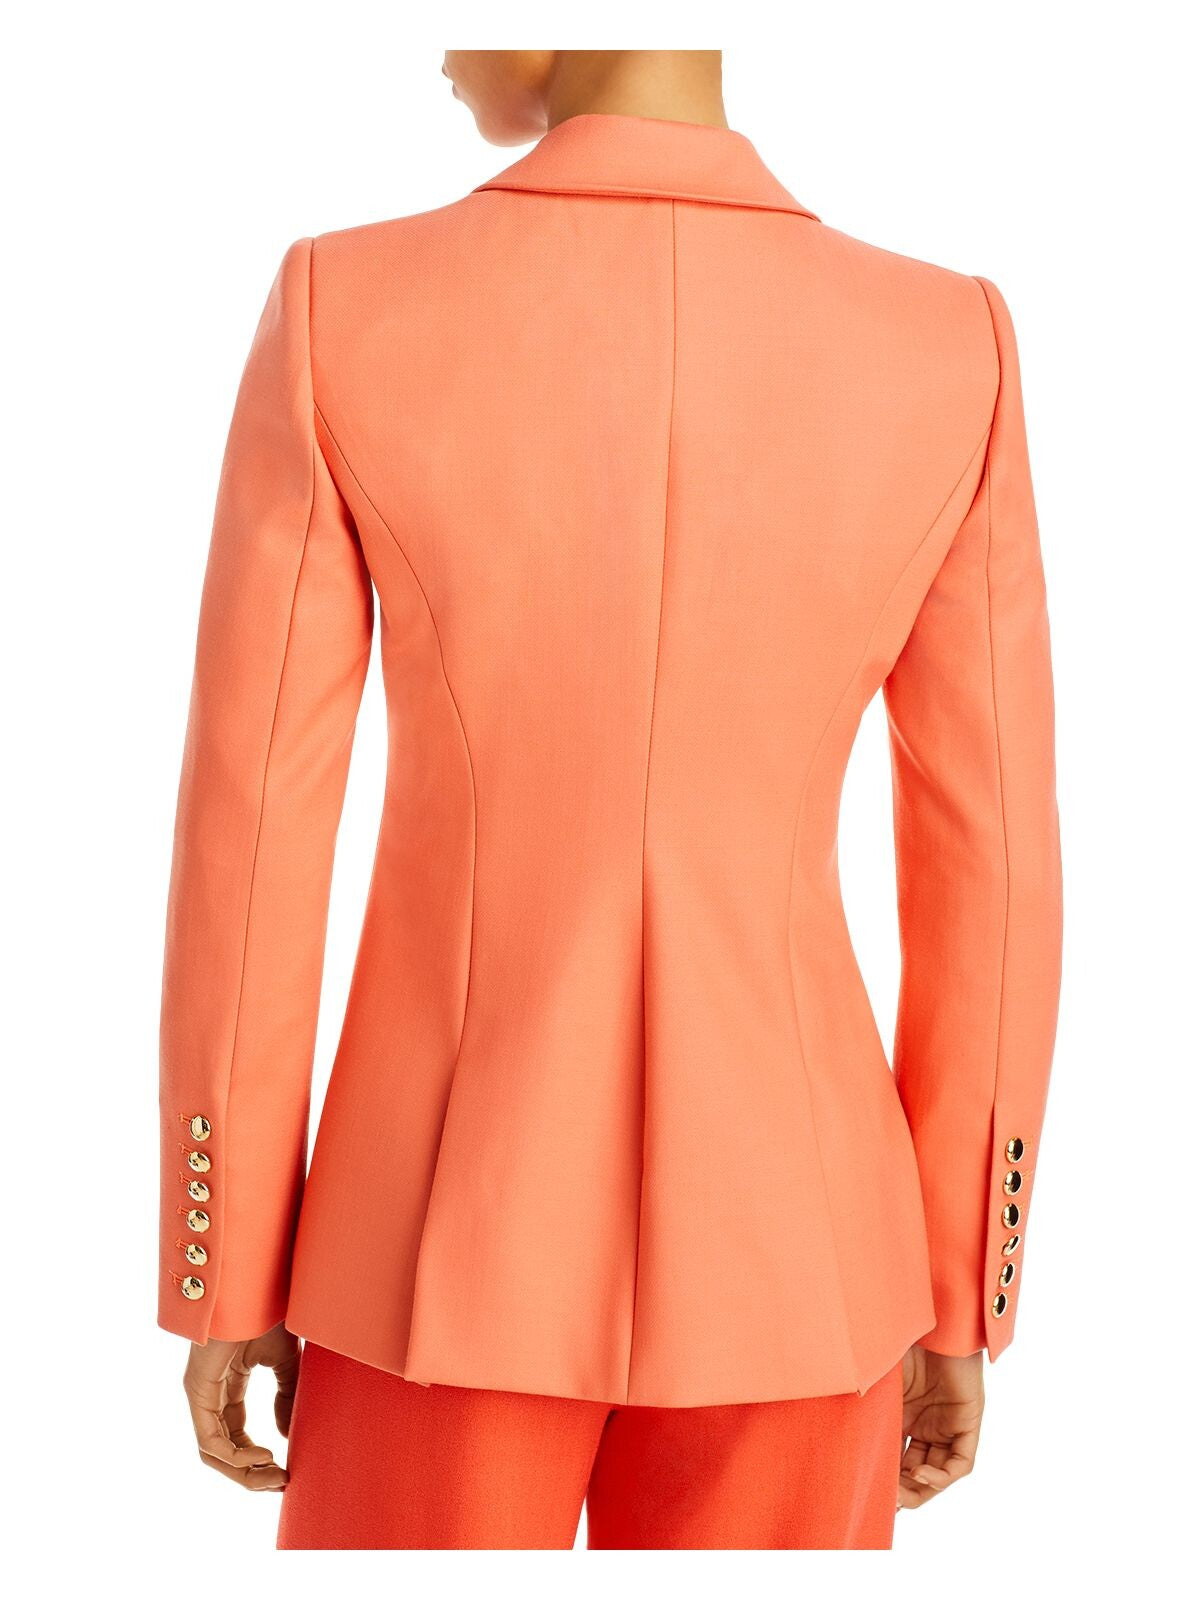 SERGIO HUDSON Womens Orange Textured Pocketed Lined Shoulder Pads Back Slits Wear To Work Blazer Jacket 0